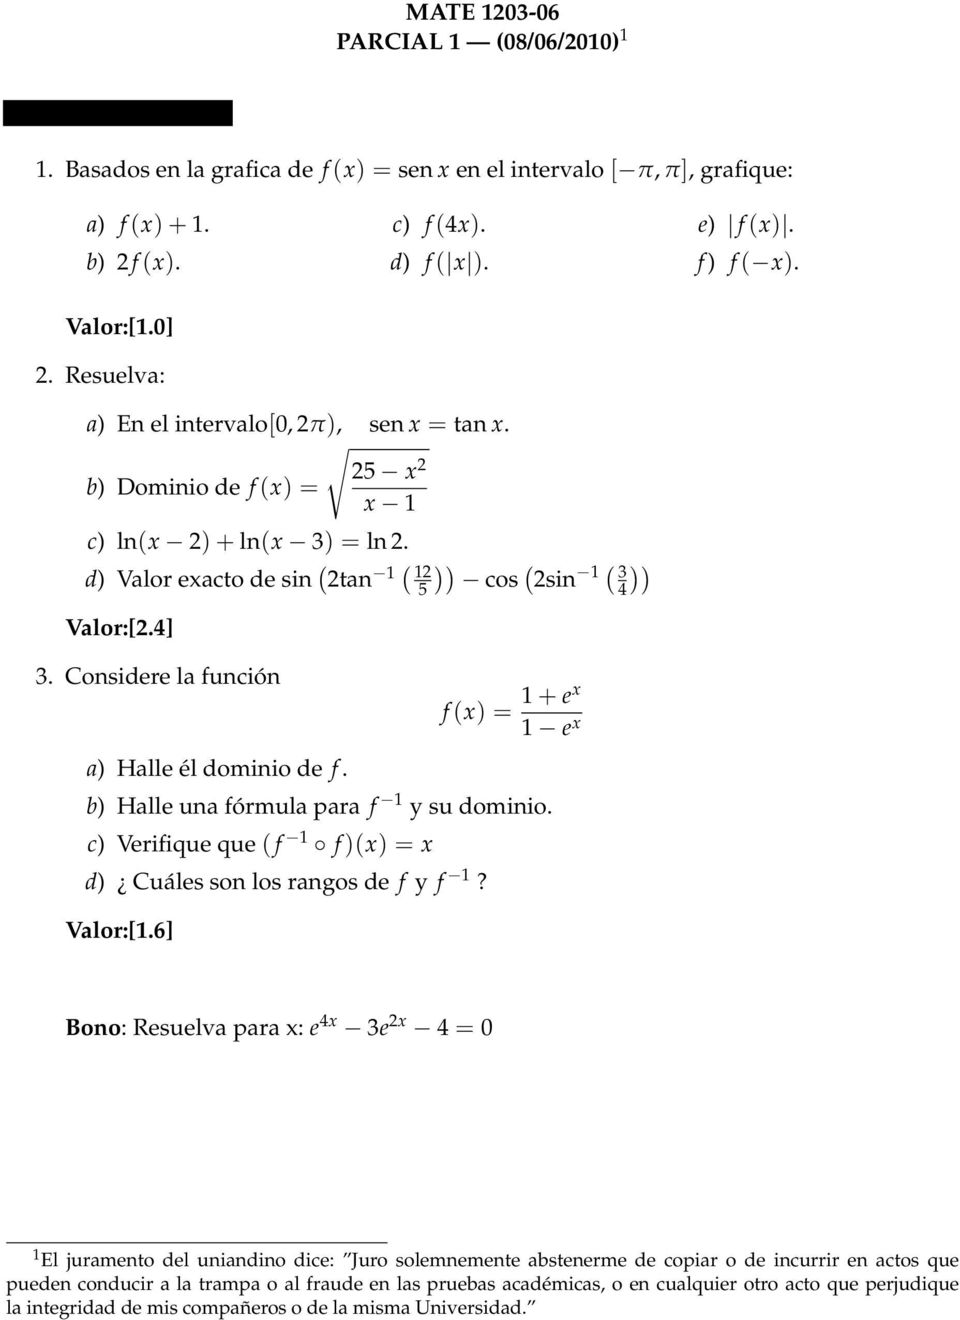 Considere la función a) Halle él dominio de f. )) ( cos 2sin 1 ( )) 3 4 f(x) = 1 + ex 1 e x b) Halle una fórmula para f 1 y su dominio.